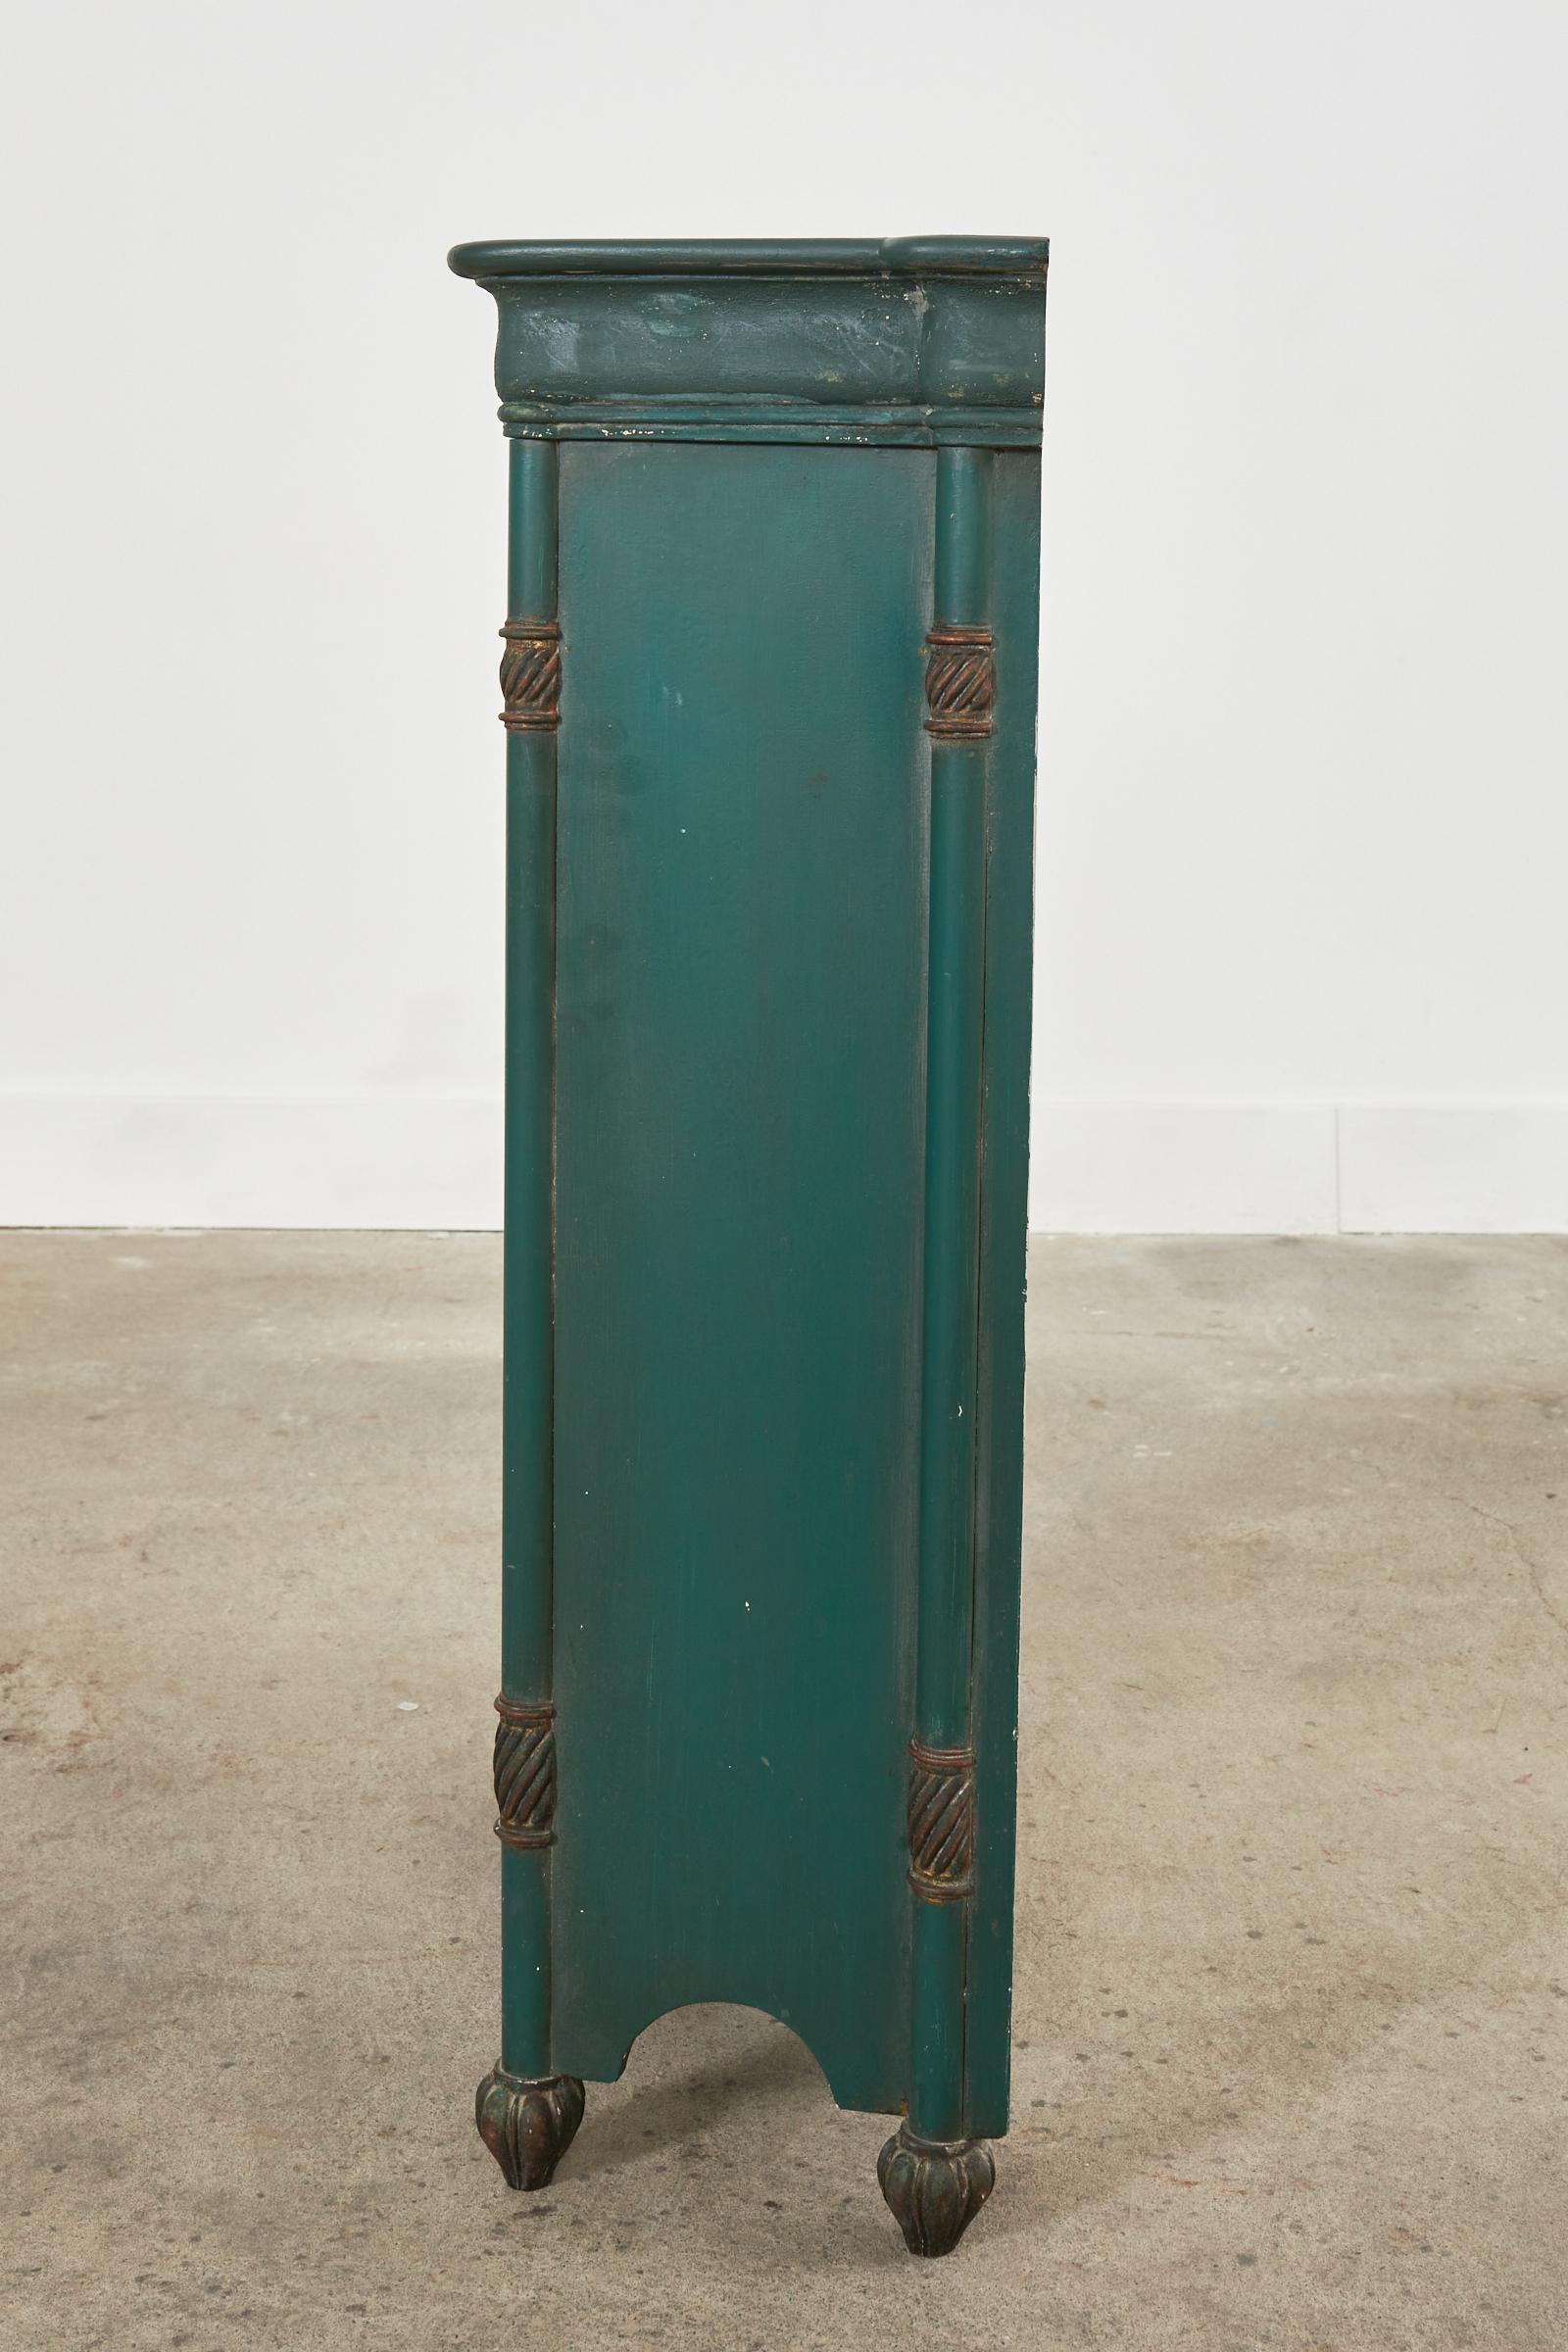 Cabinet en trompe l'Oeil de style Fornasetti italien de la Modernité du milieu du siècle dernier en vente 12